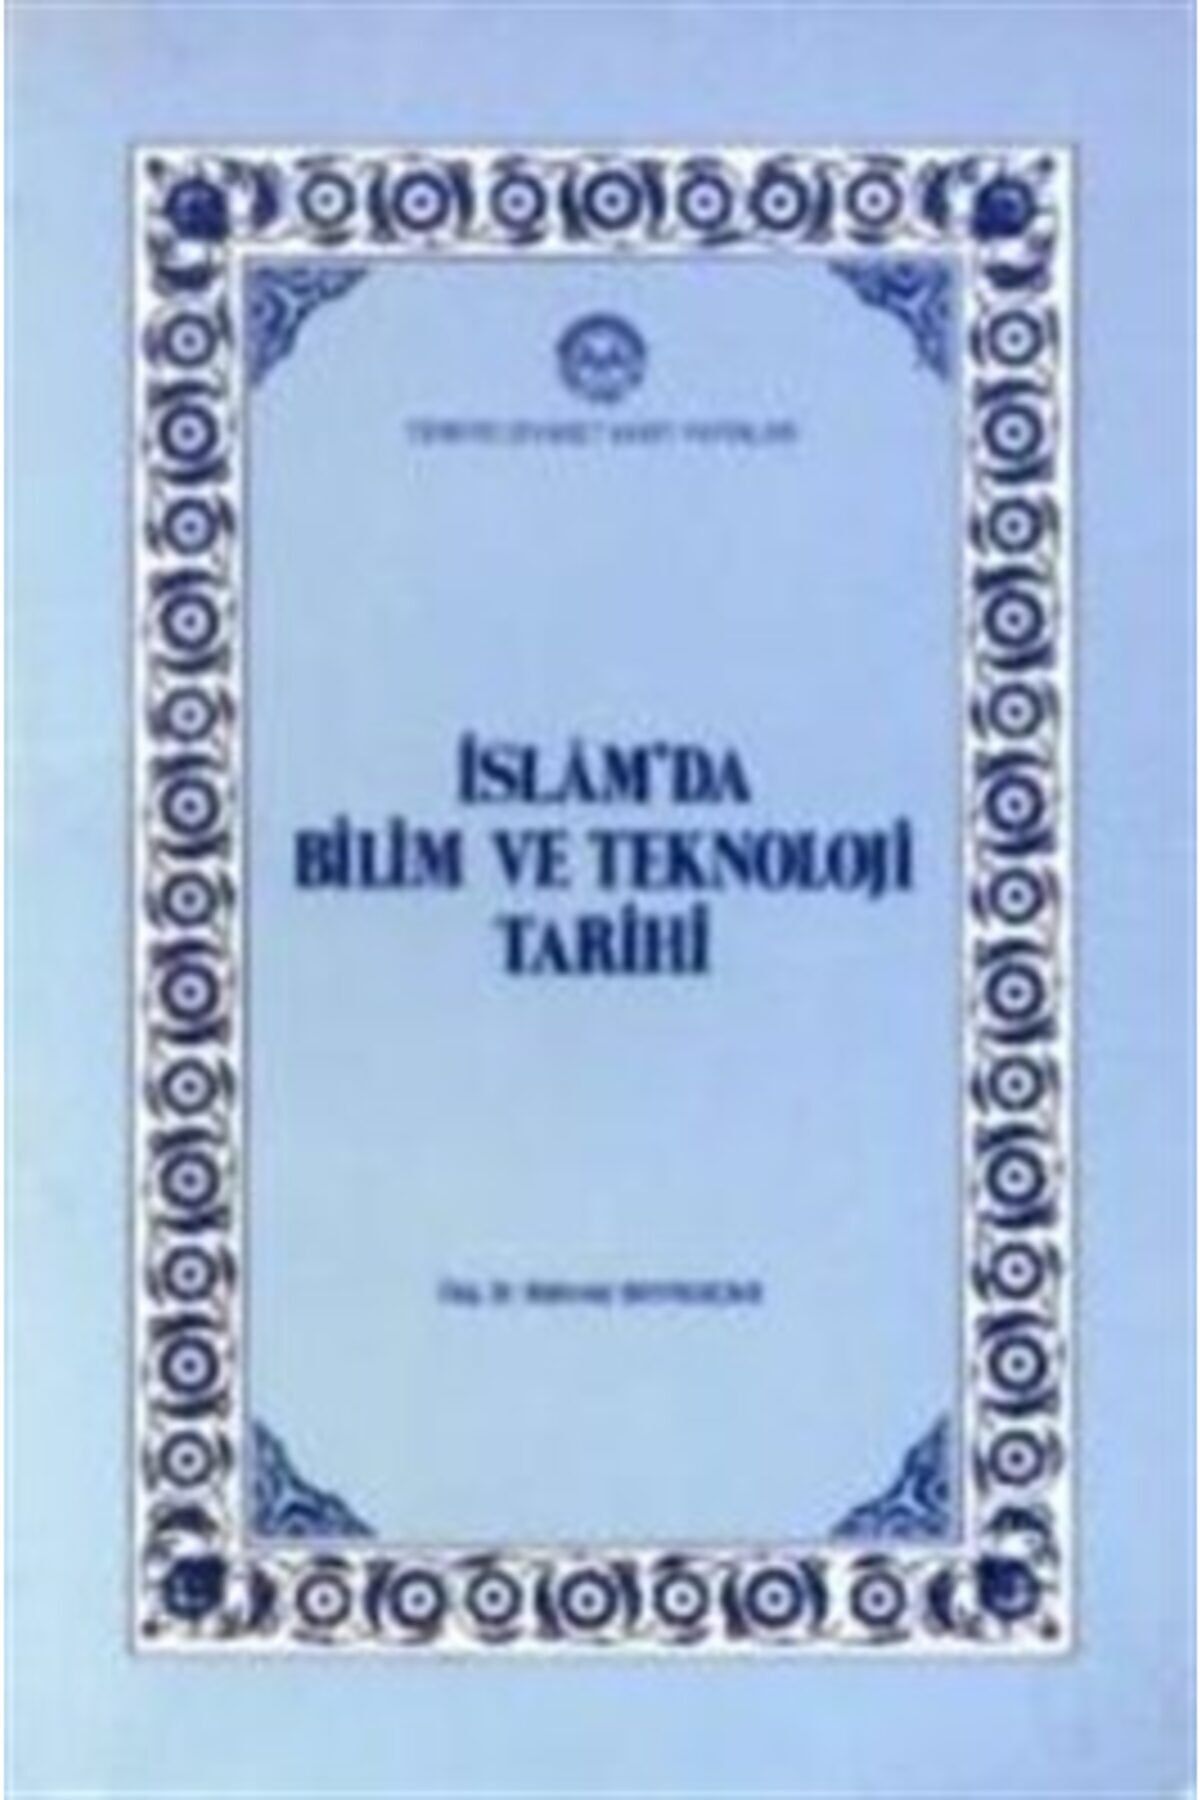 Türkiye Diyanet Vakfı Yayınları Islam'da Bilim Ve Teknoloji Tarihi